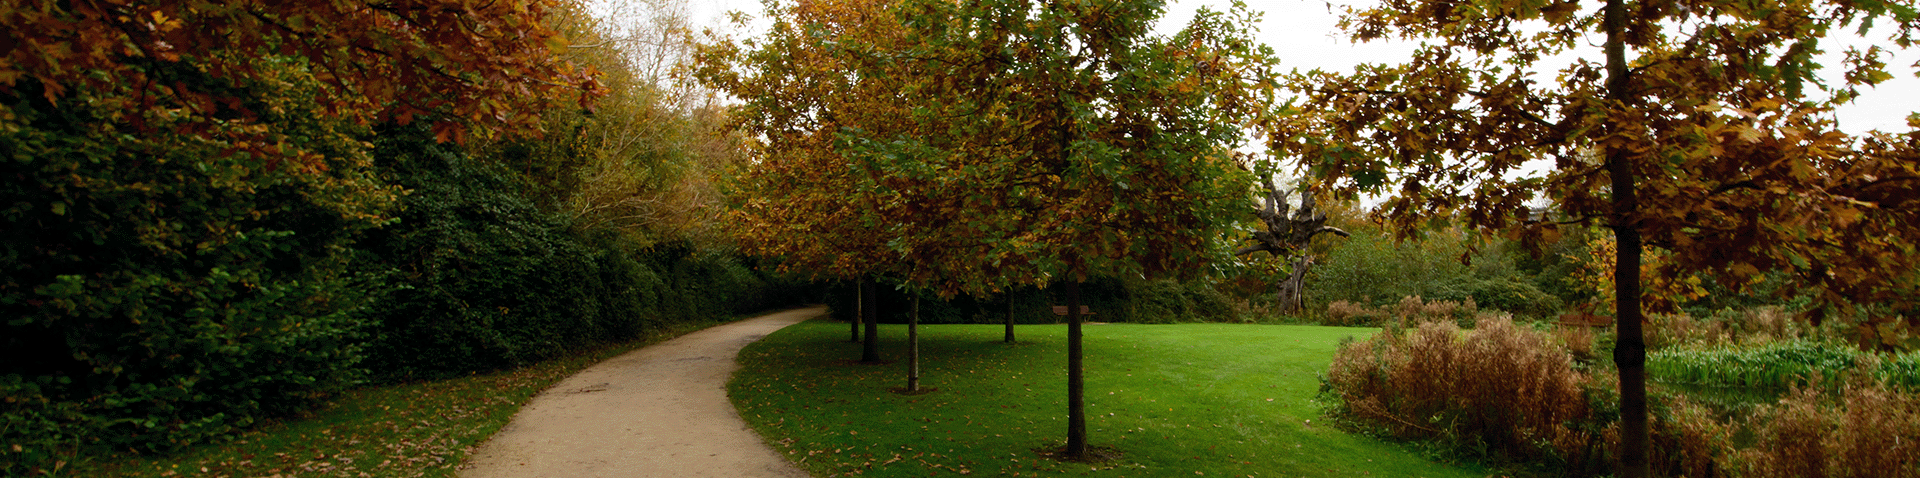 UCD Campus in autumn